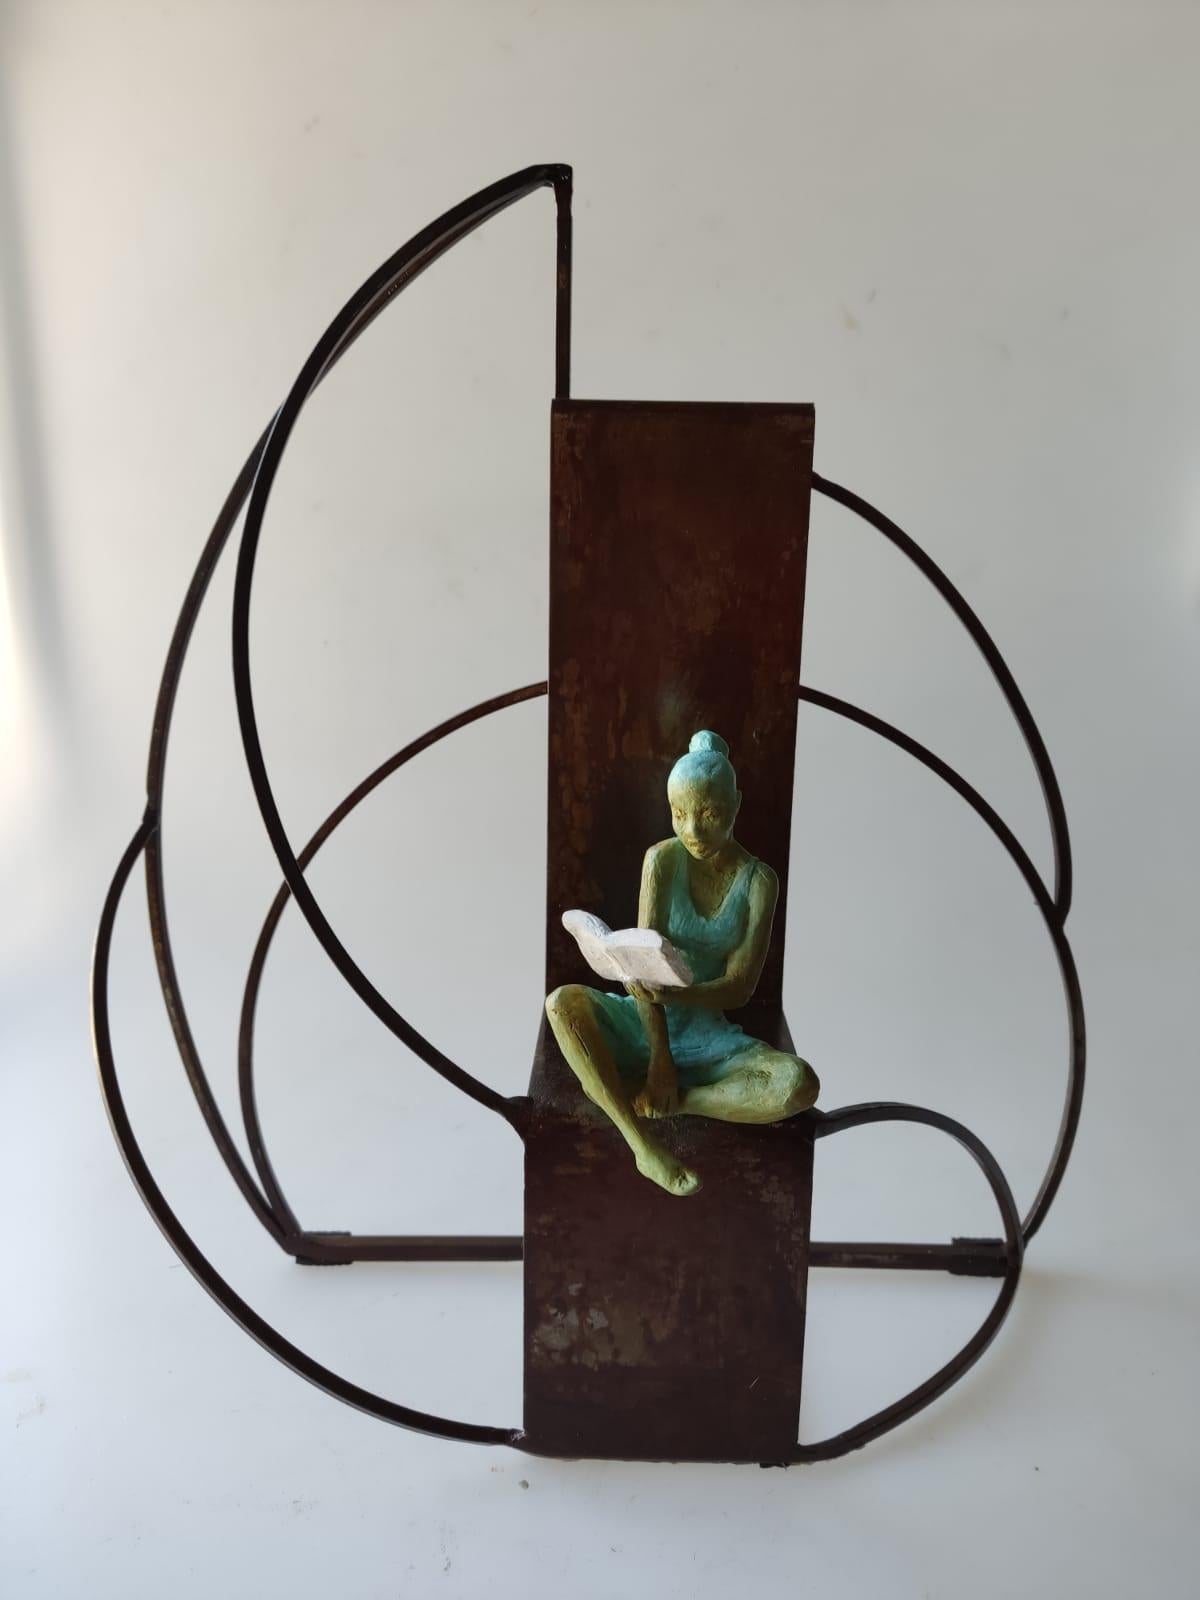 Joan Artigas Planas Figurative Sculpture - "Rose & Prose" contemporary bronze table, mural sculpture figurative reading 